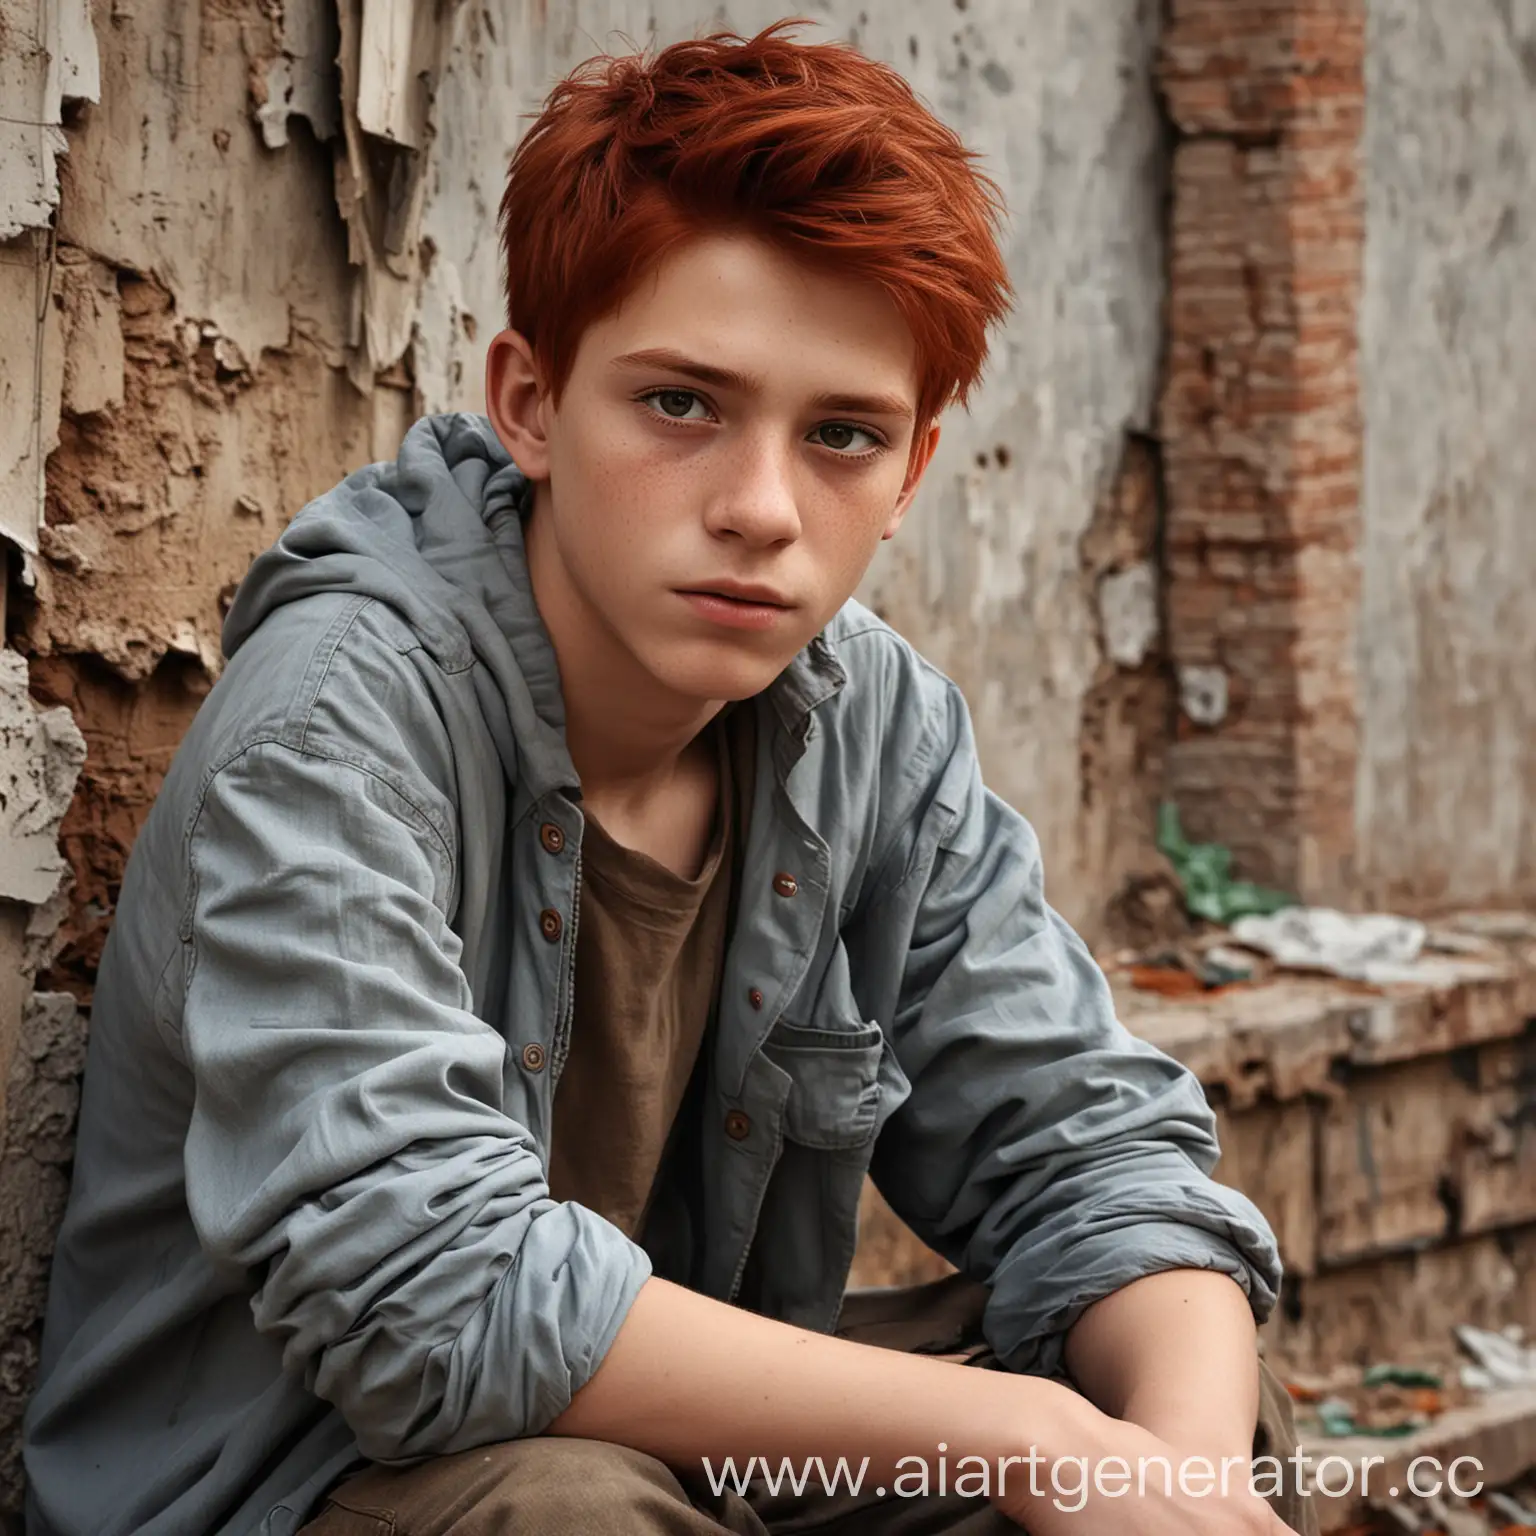 создай реалистичного мальчика, с рыжими волосами и карими глазами, 16 лет, он должен сидеть на фоне заброшенного задания